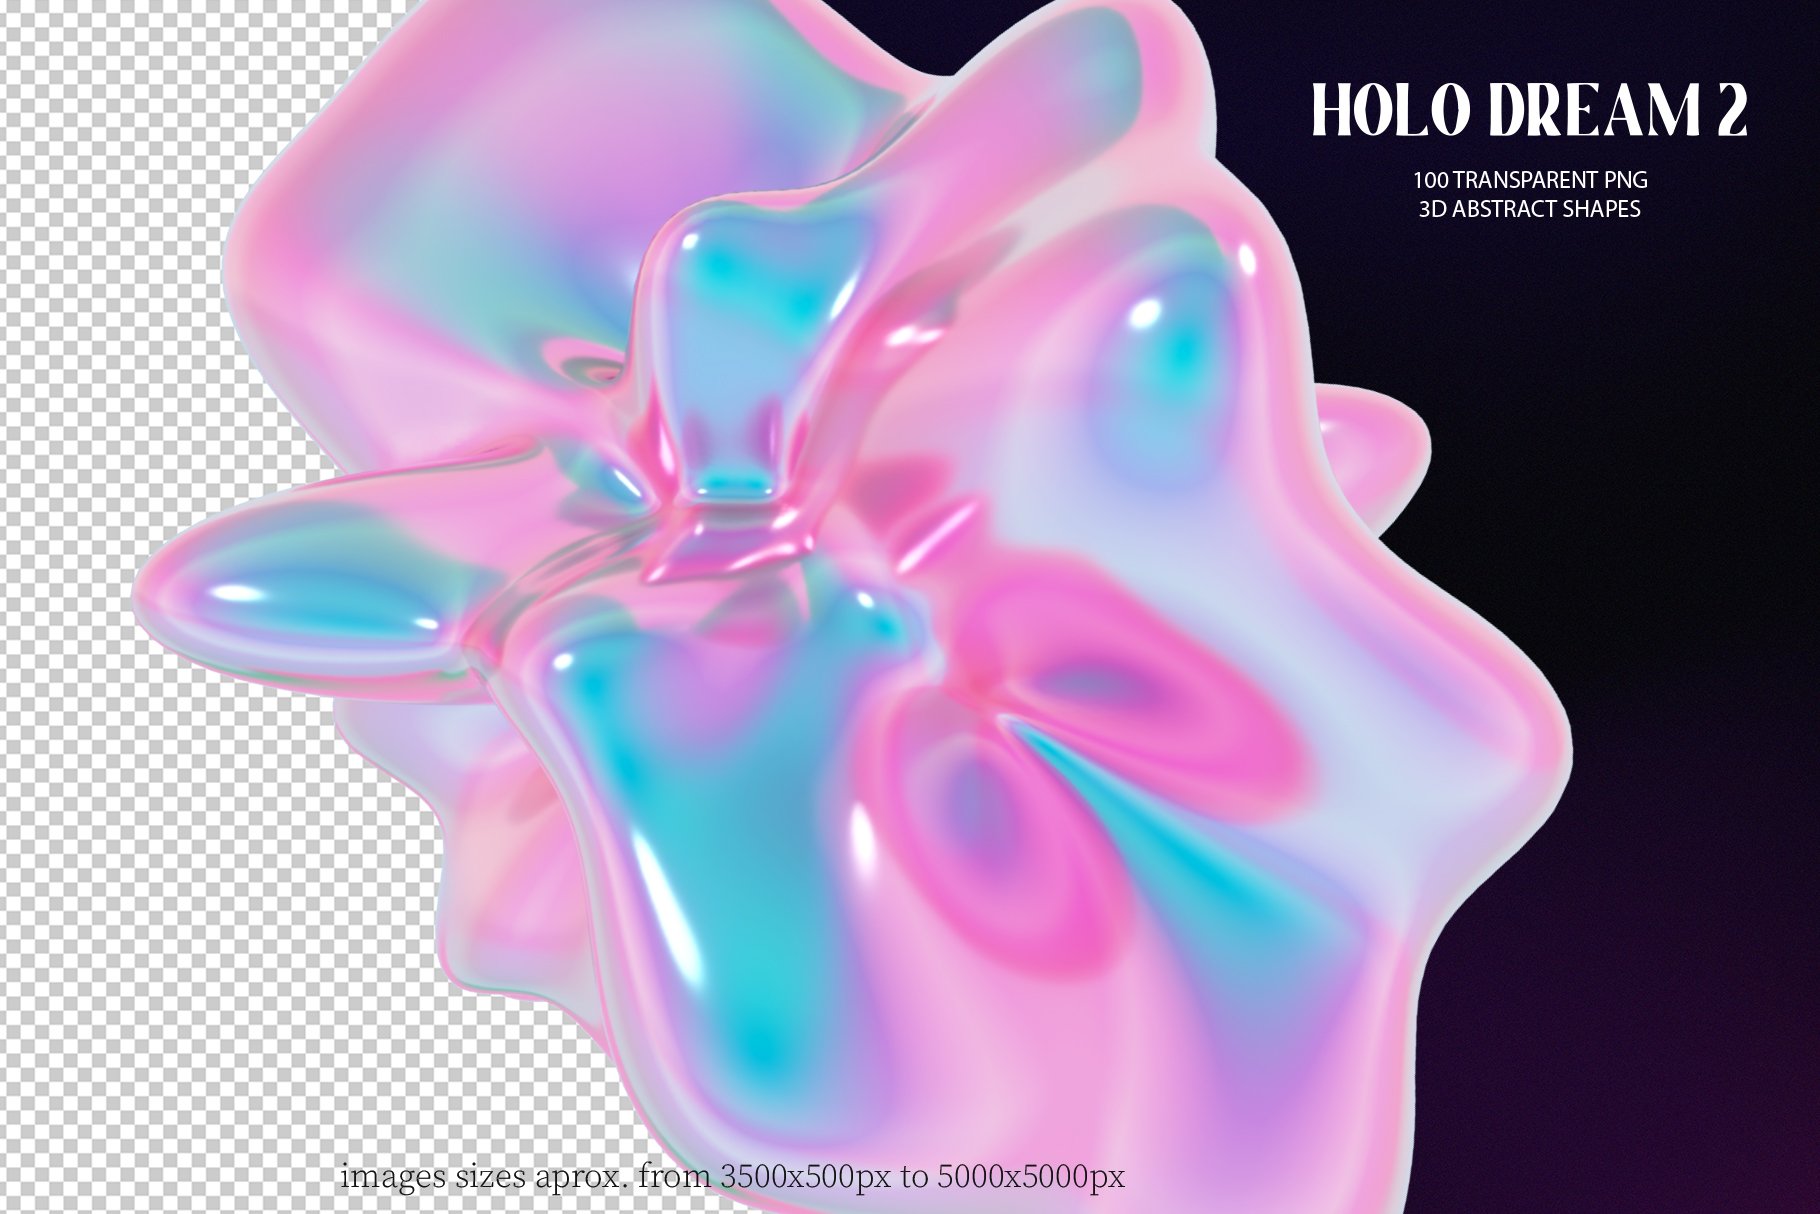 100款全息3D迷幻酸性抽象艺术闪亮PNG设计图形 Holo Iridescence 3D Shapes graphics Vol.2 , 第6张